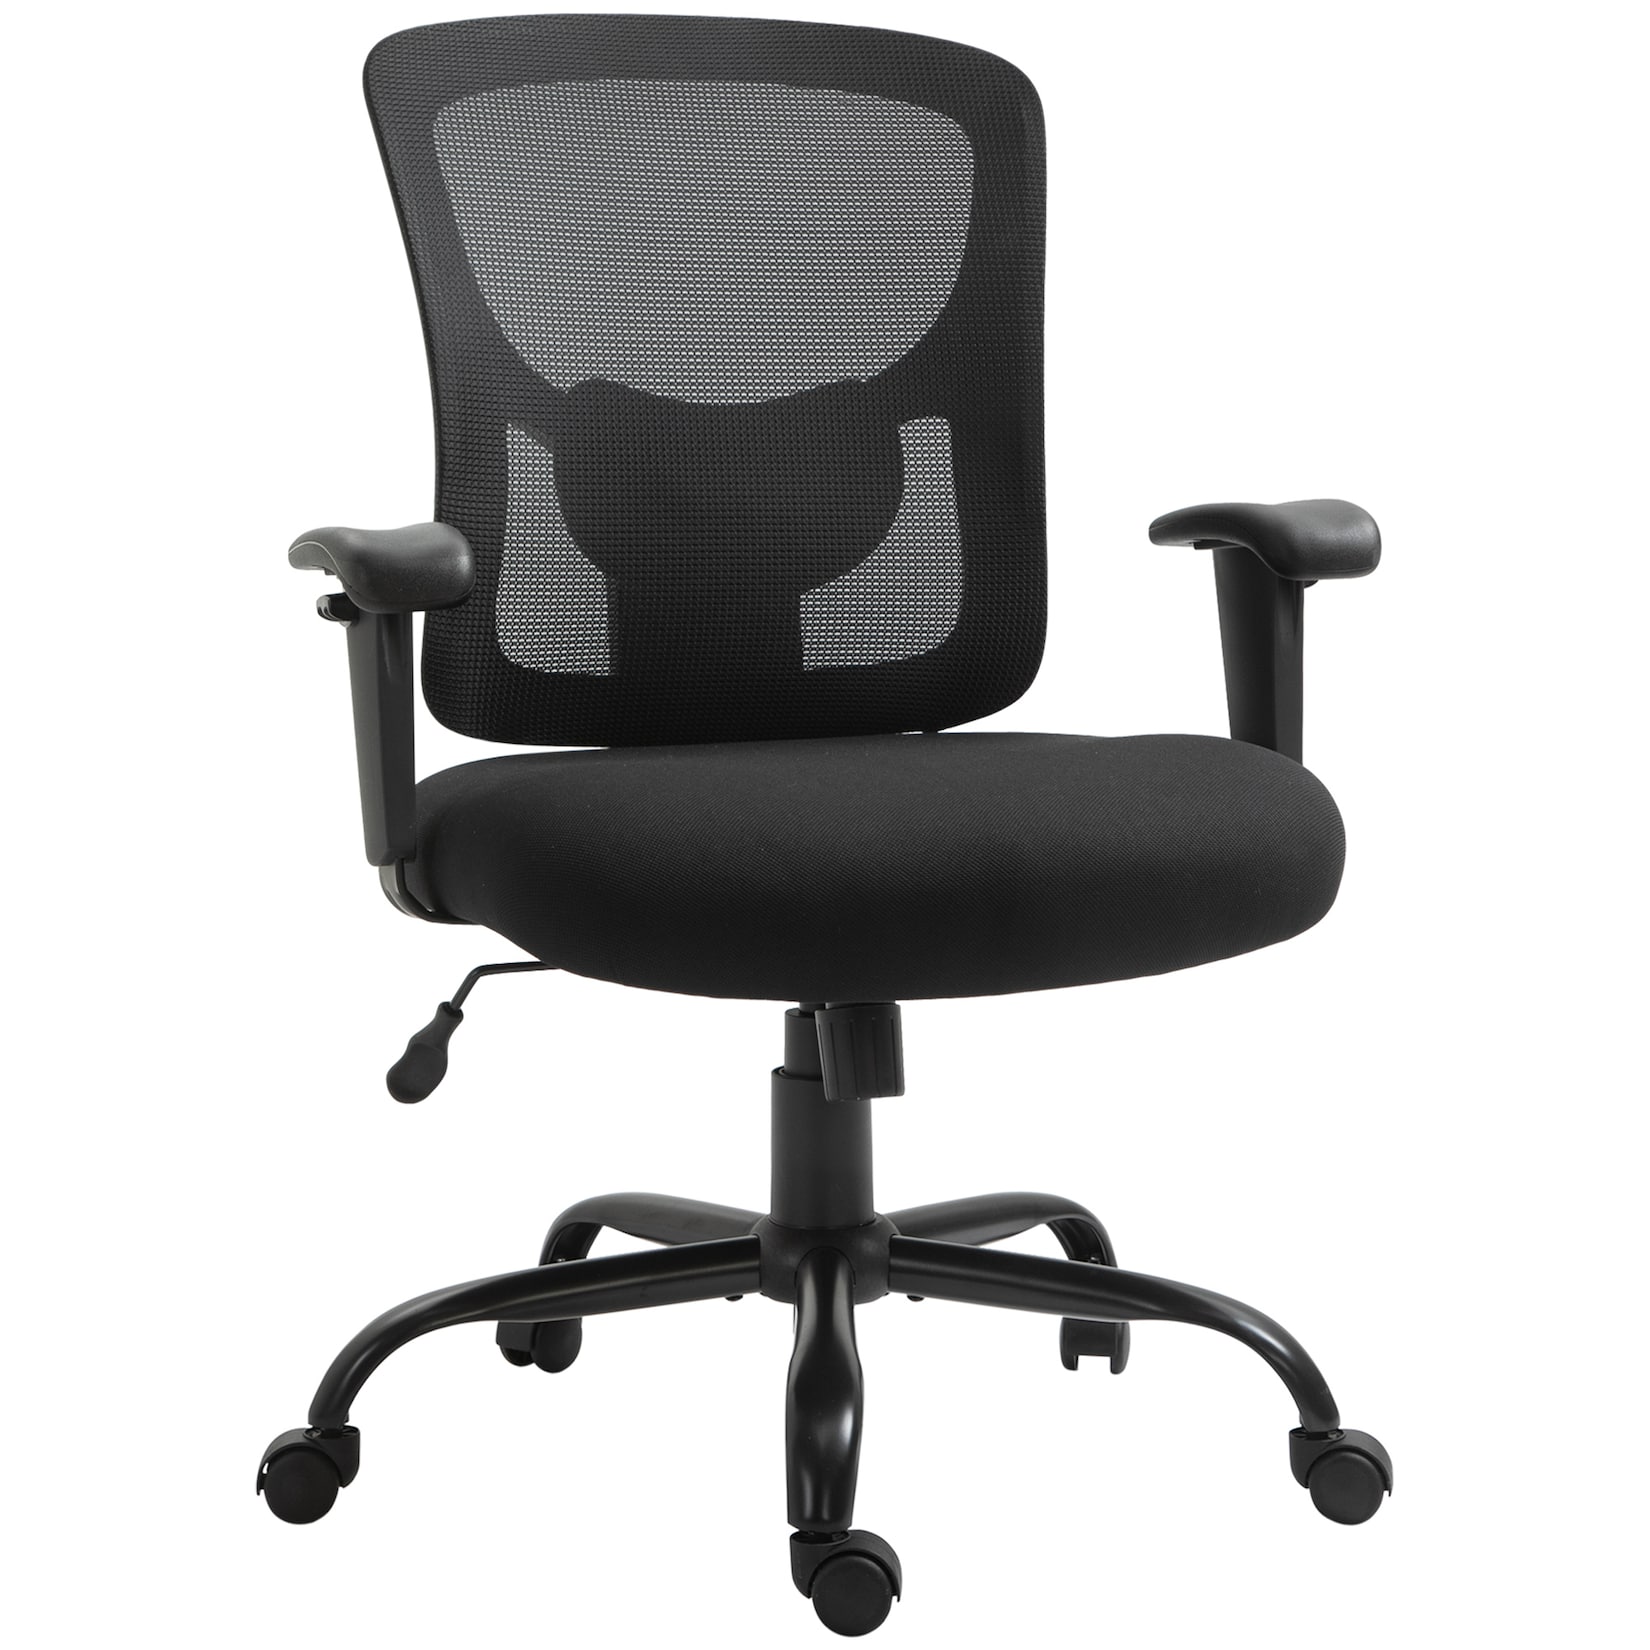 Vinsetto Bürostuhl mit Armlehne schwarz 71B x 63,5T x 100-110H cm   bürostuhl mit rückenlehne  stuhl mit rollen  für büro und wohnzimmer